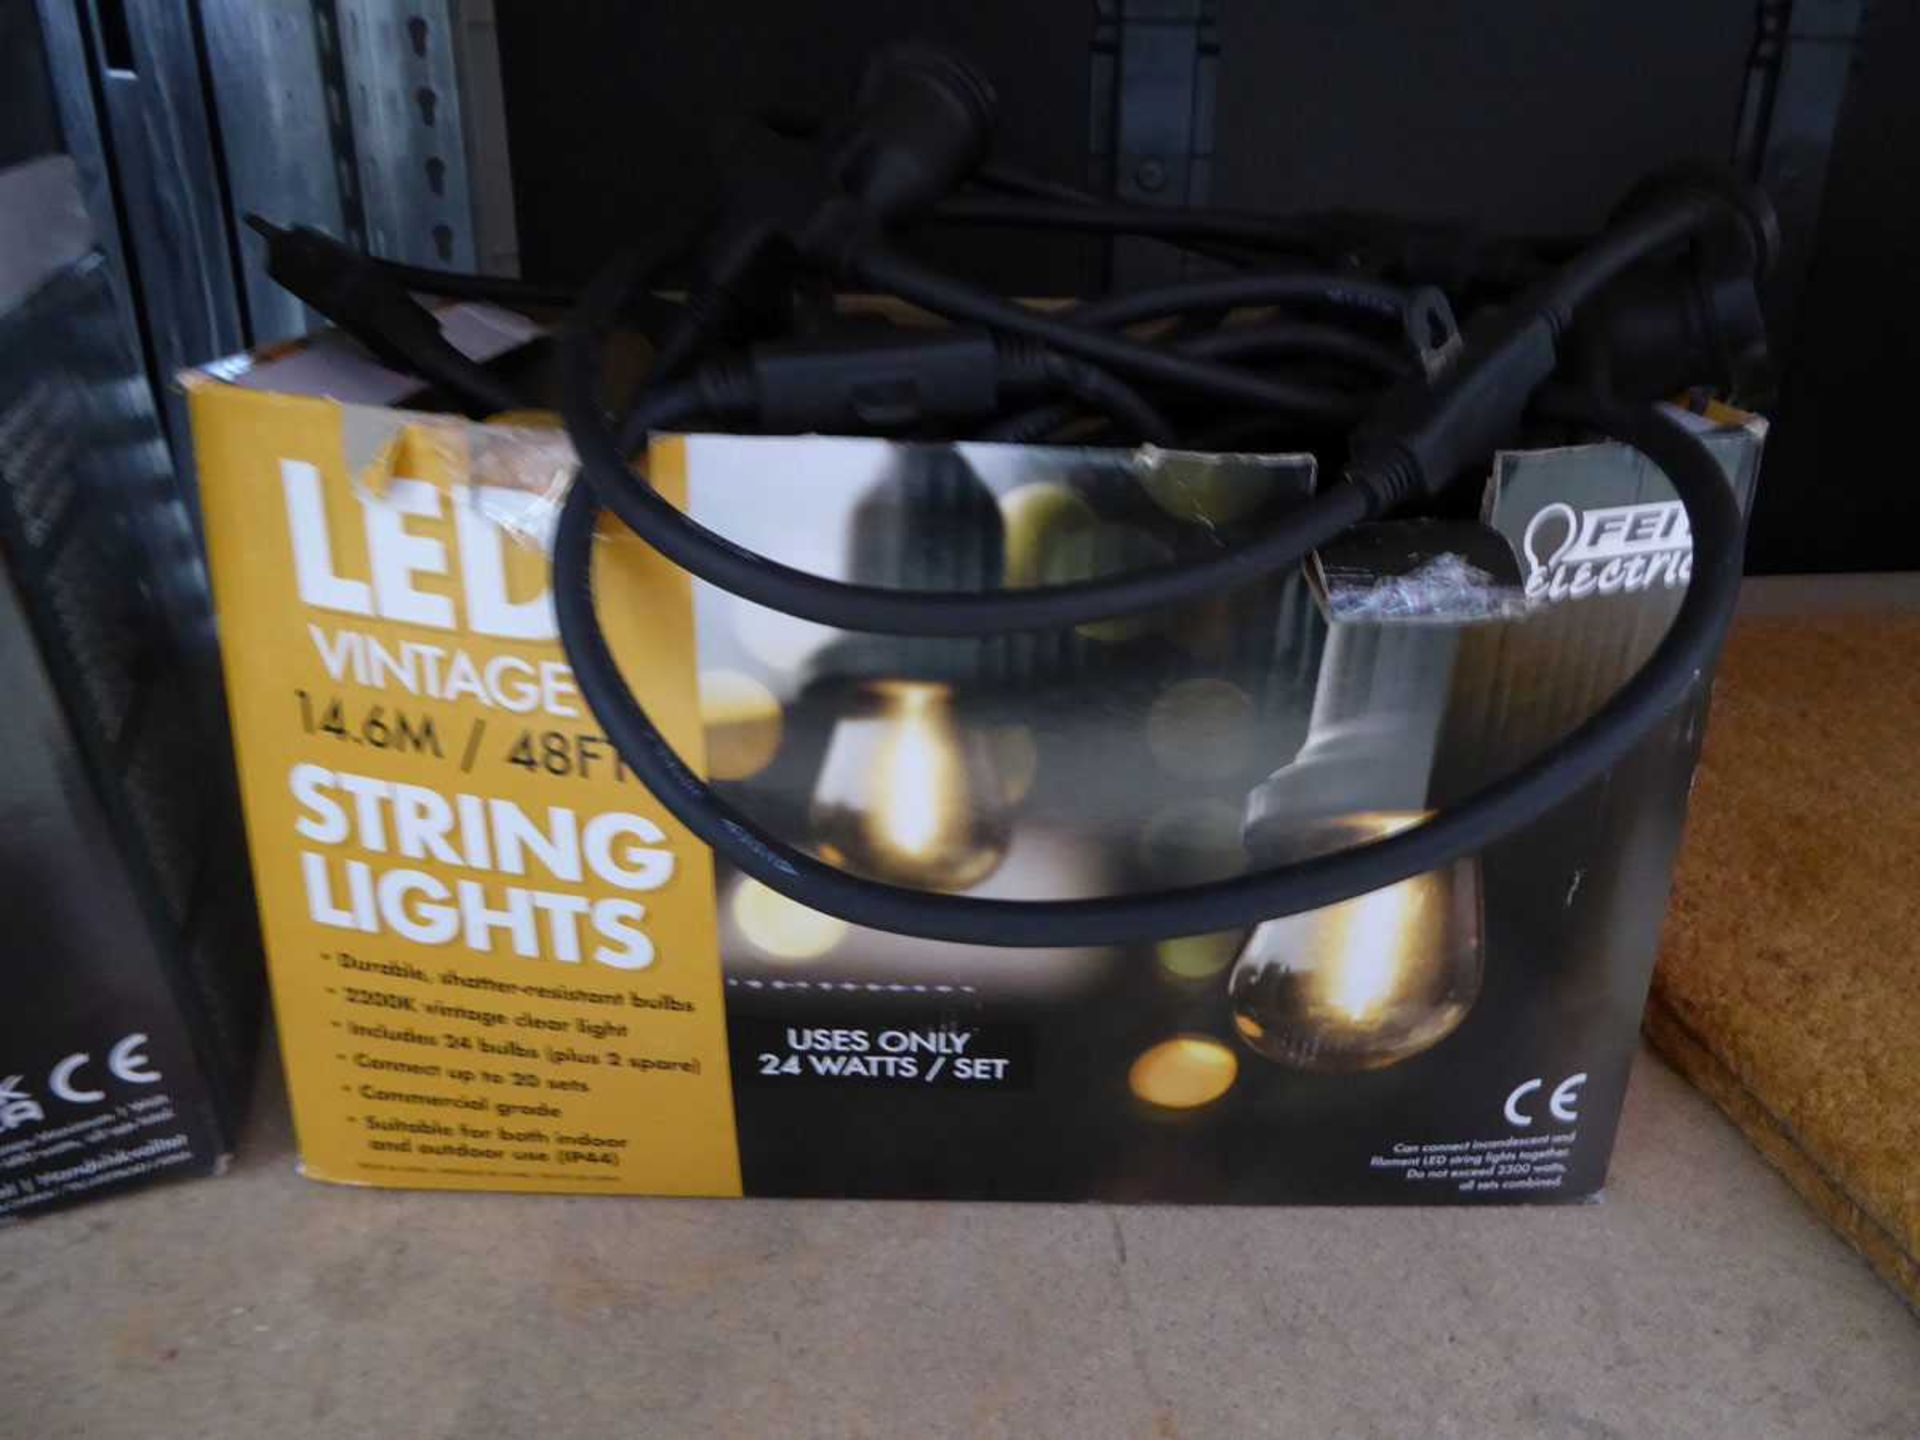 +VAT 2 boxed set of LED vintage garden string lights - no bulbs - Image 2 of 2